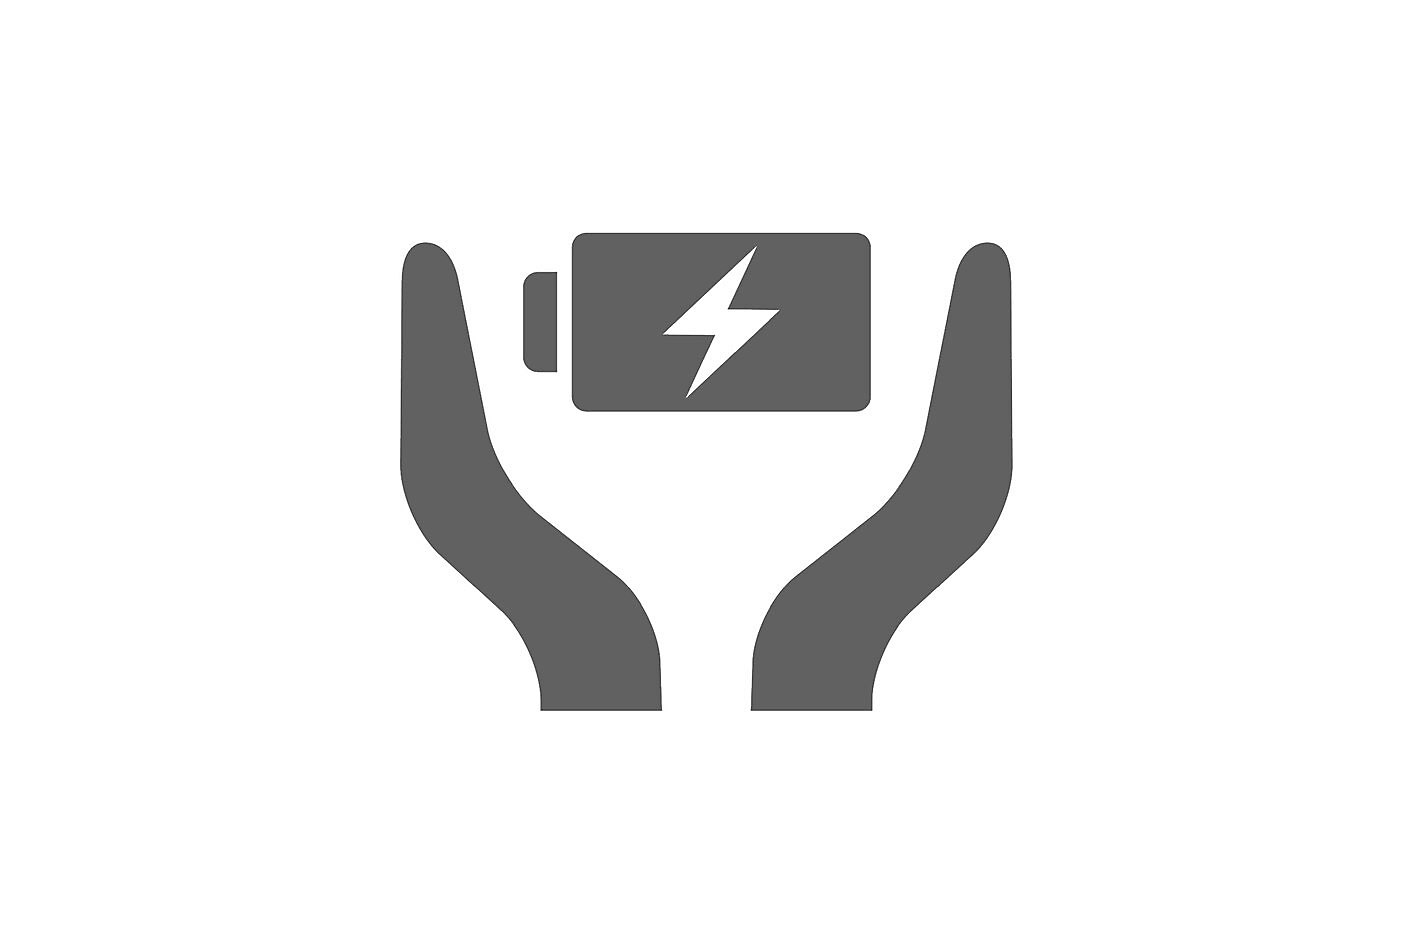 Imagen del ícono de dos manos rodeando una batería que tiene el símbolo de un rayo